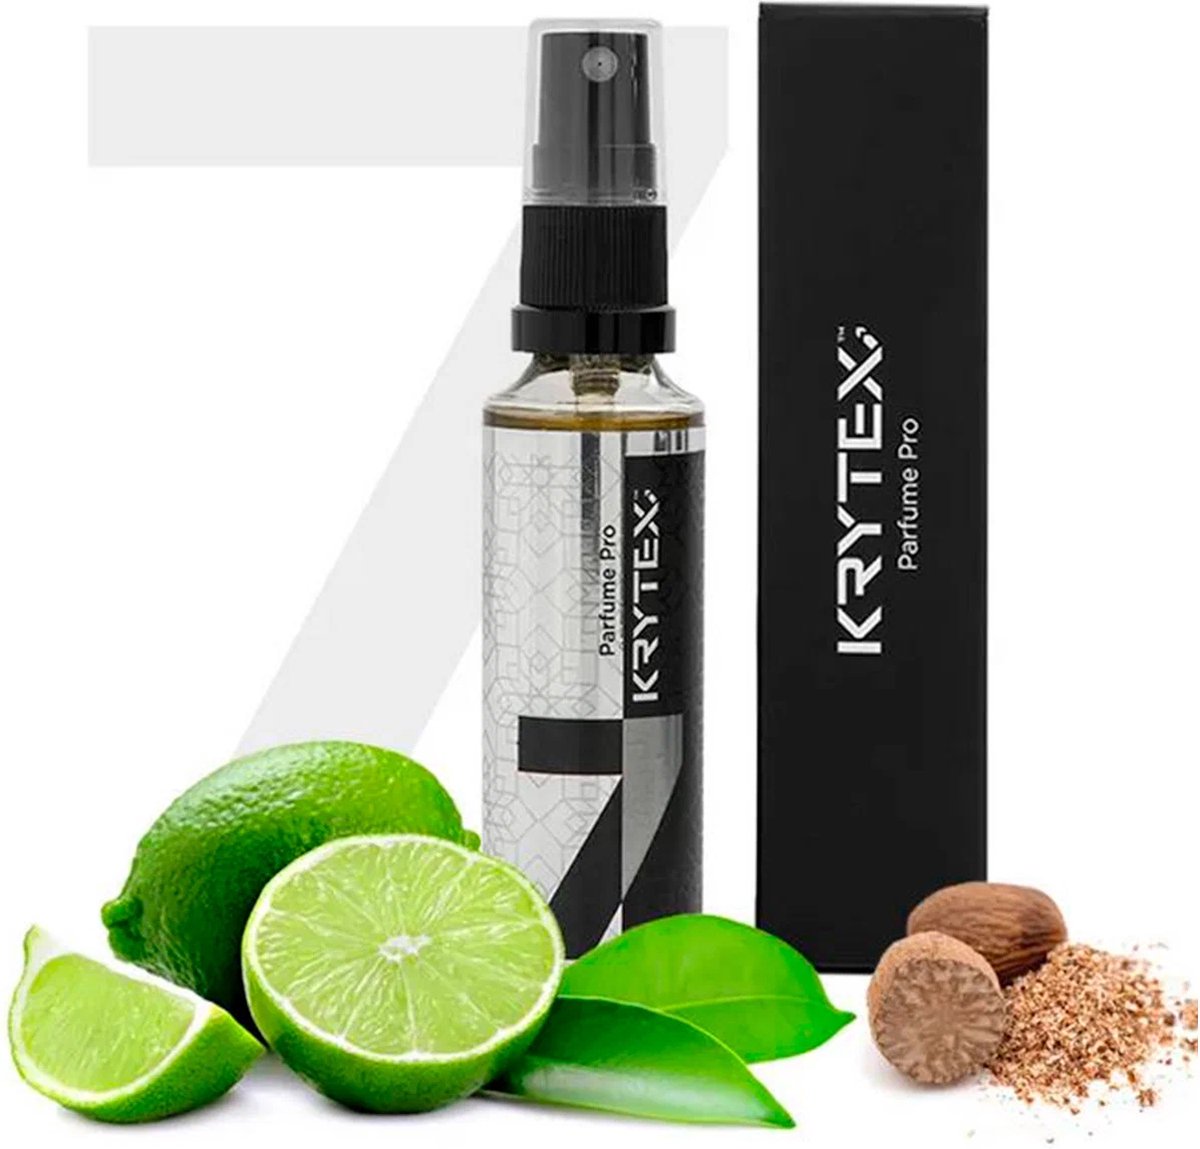 KRYTEX™ Nr7 auto luchtverfrisser auto parfum autoparfum spray autogeurtje Luxe parfum auto geurverfrisser perfume - auto luchtverfrisser - natuurlijke ingrediënten - ECHTE parfum